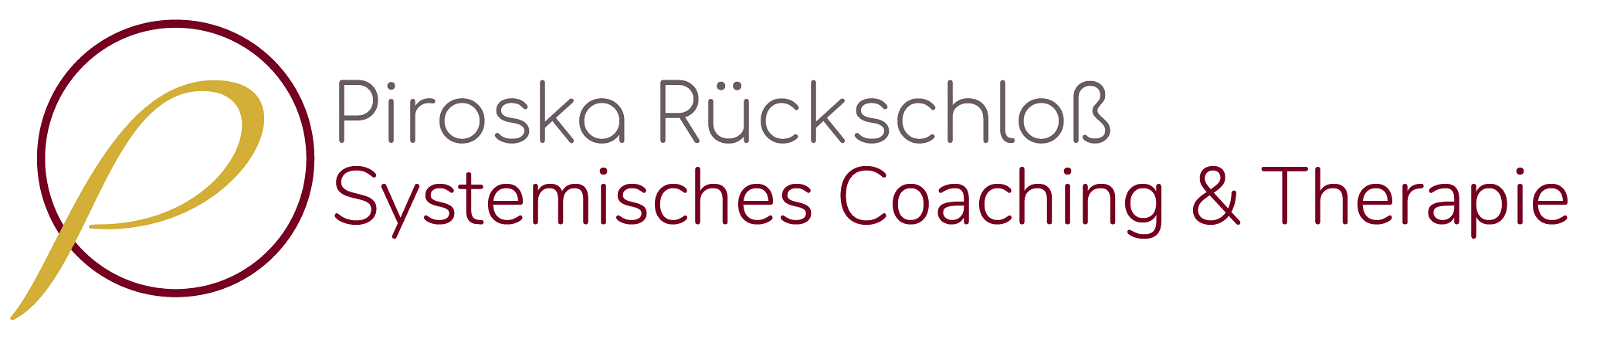 Piroska Rückschloss | Systemisches Coaching & Therapie | Hypnose